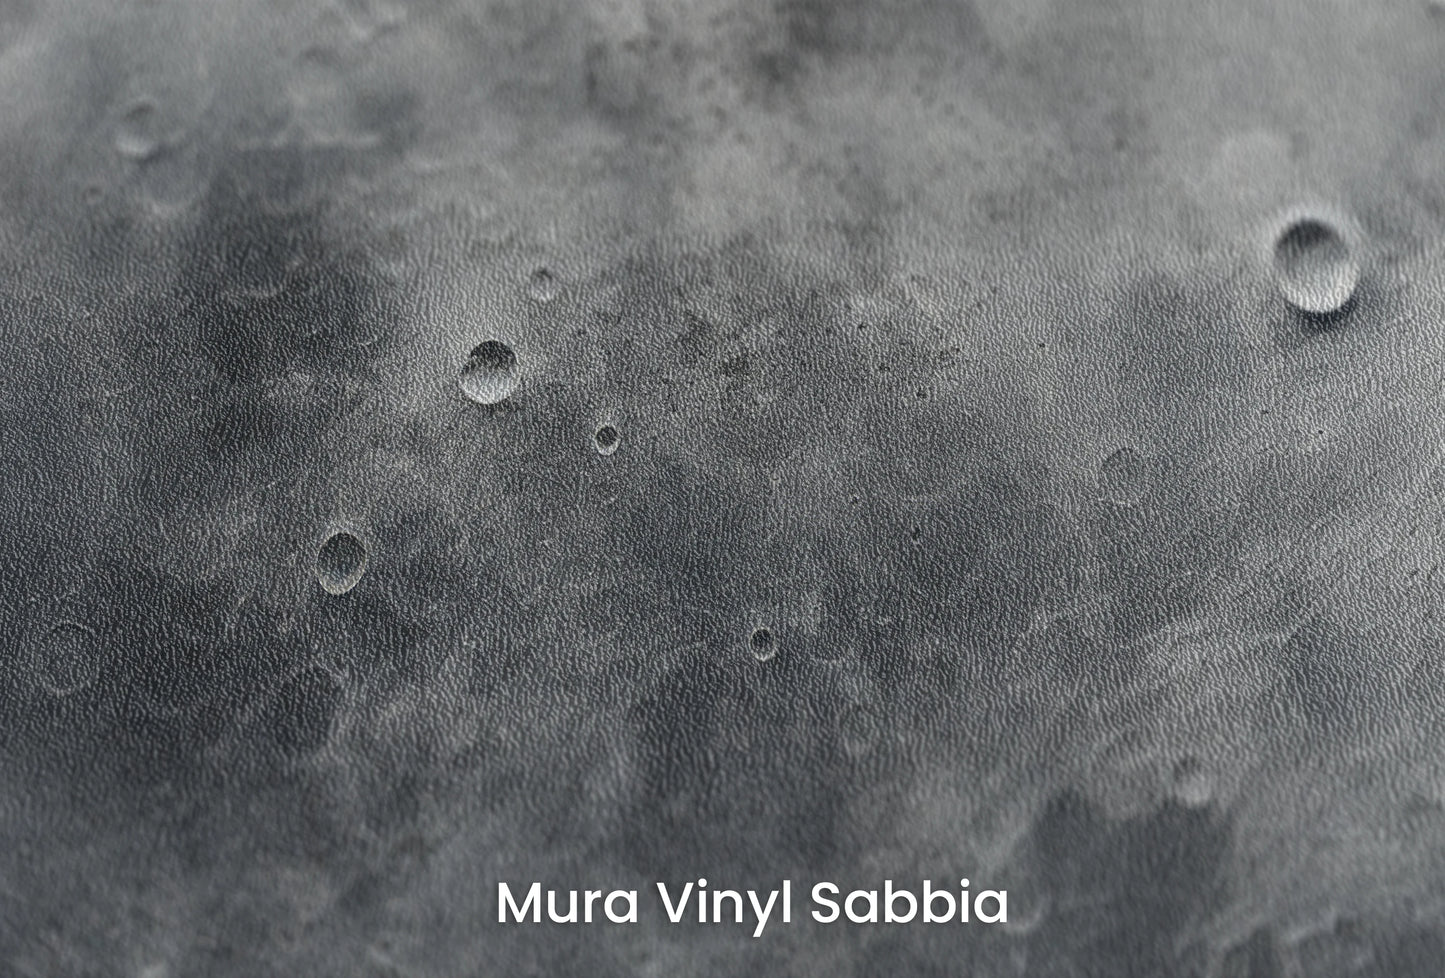 Zbliżenie na artystyczną fototapetę o nazwie Jovian Vortex na podłożu Mura Vinyl Sabbia struktura grubego ziarna piasku.